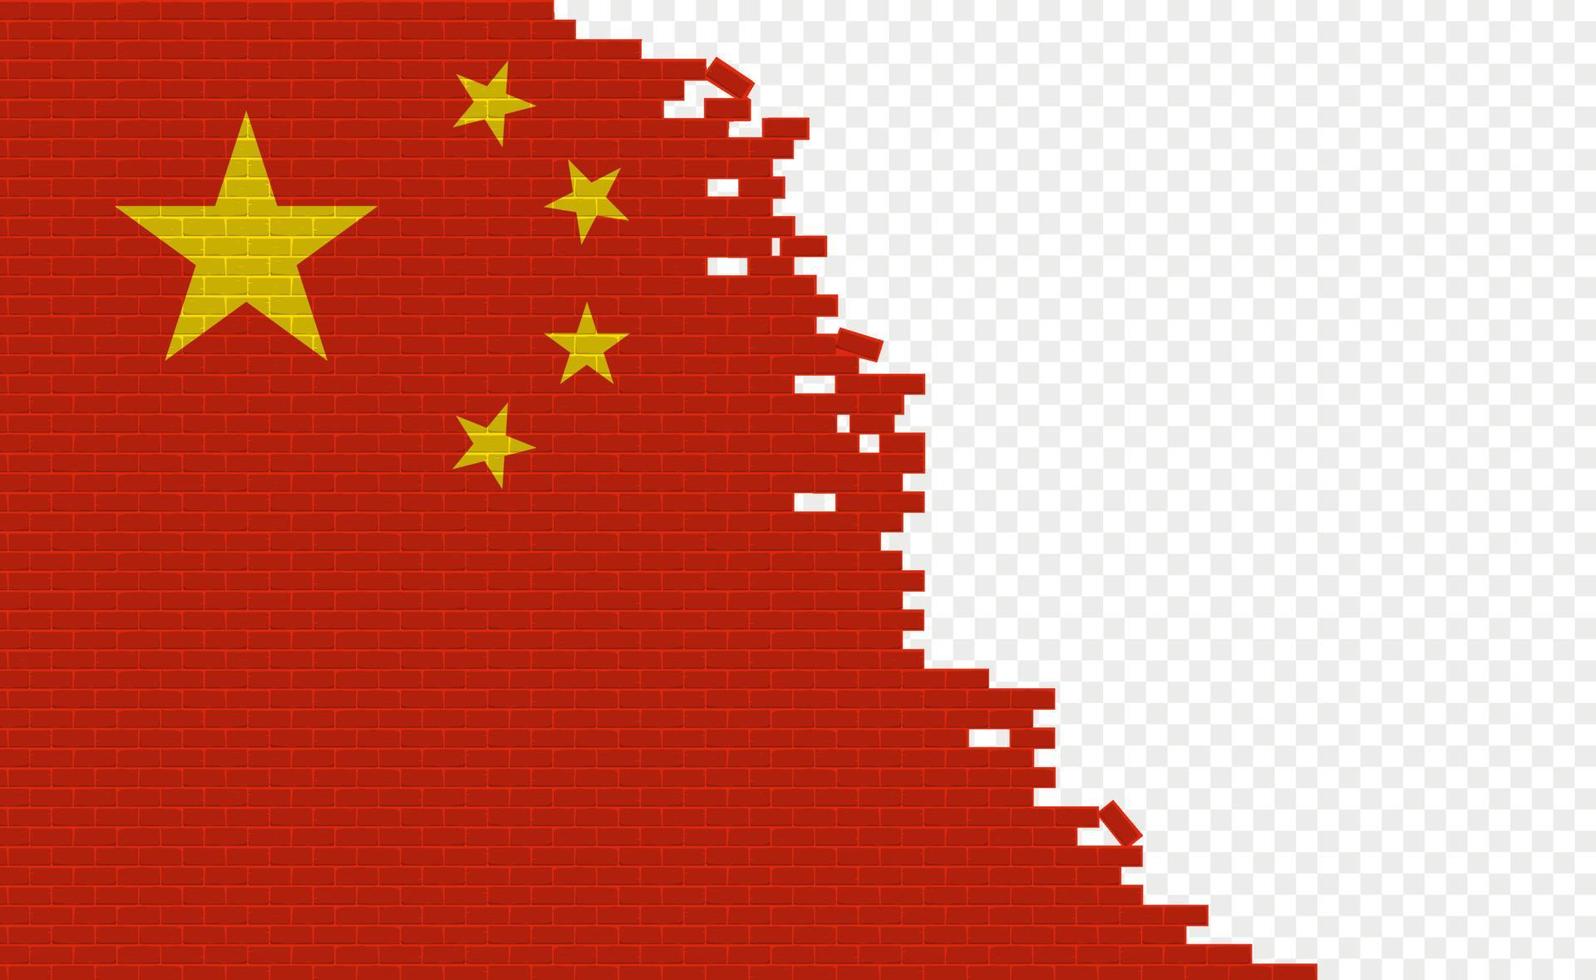 drapeau de la chine sur le mur de briques cassées. champ de drapeau vide d'un autre pays. comparaison de pays. édition facile et vecteur en groupes.